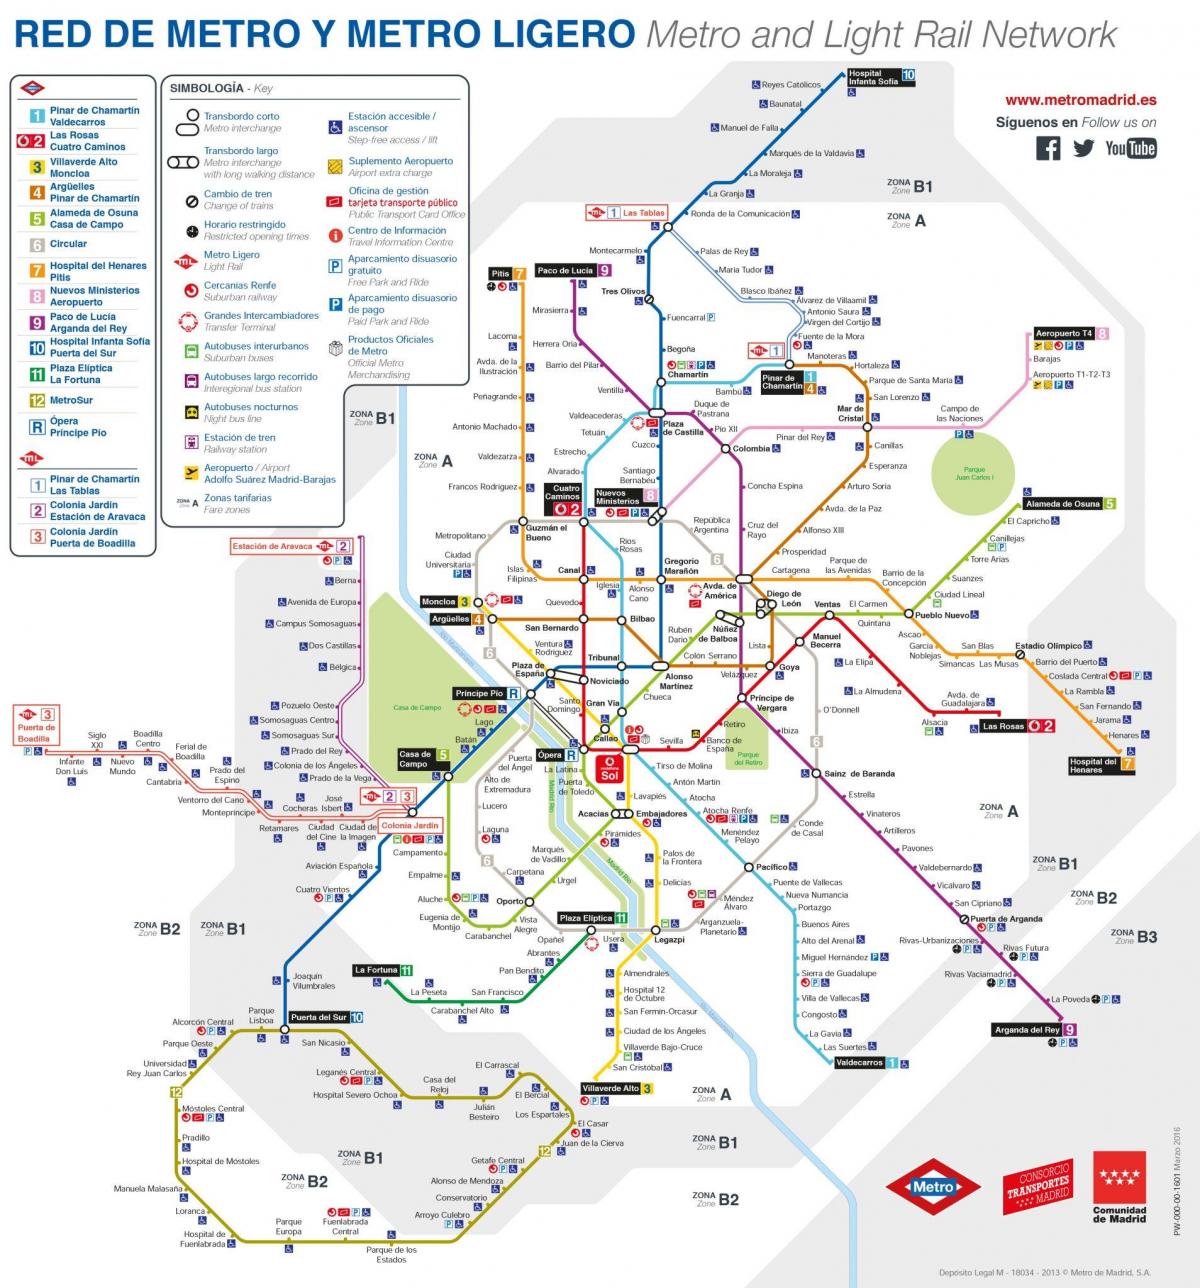 מפה של מדריד תחבורה ציבורית